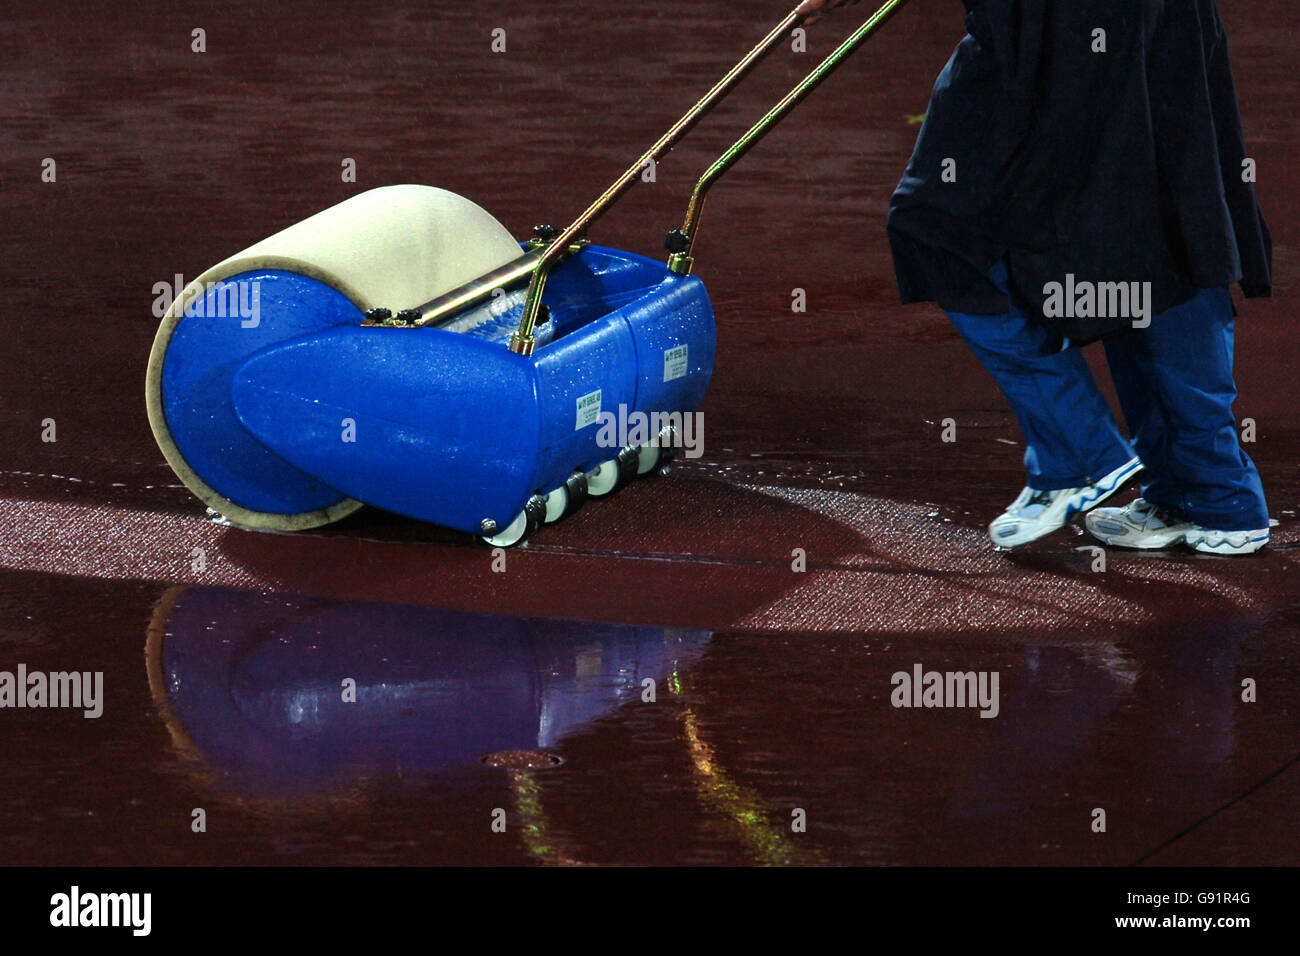 Atletica - Campionati mondiali di atletica IAAF - Helsinki 2005 - Stadio Olimpico. Un membro del personale sgomma l'acqua piovana dalla pista con una macchina rotolatrice Foto Stock